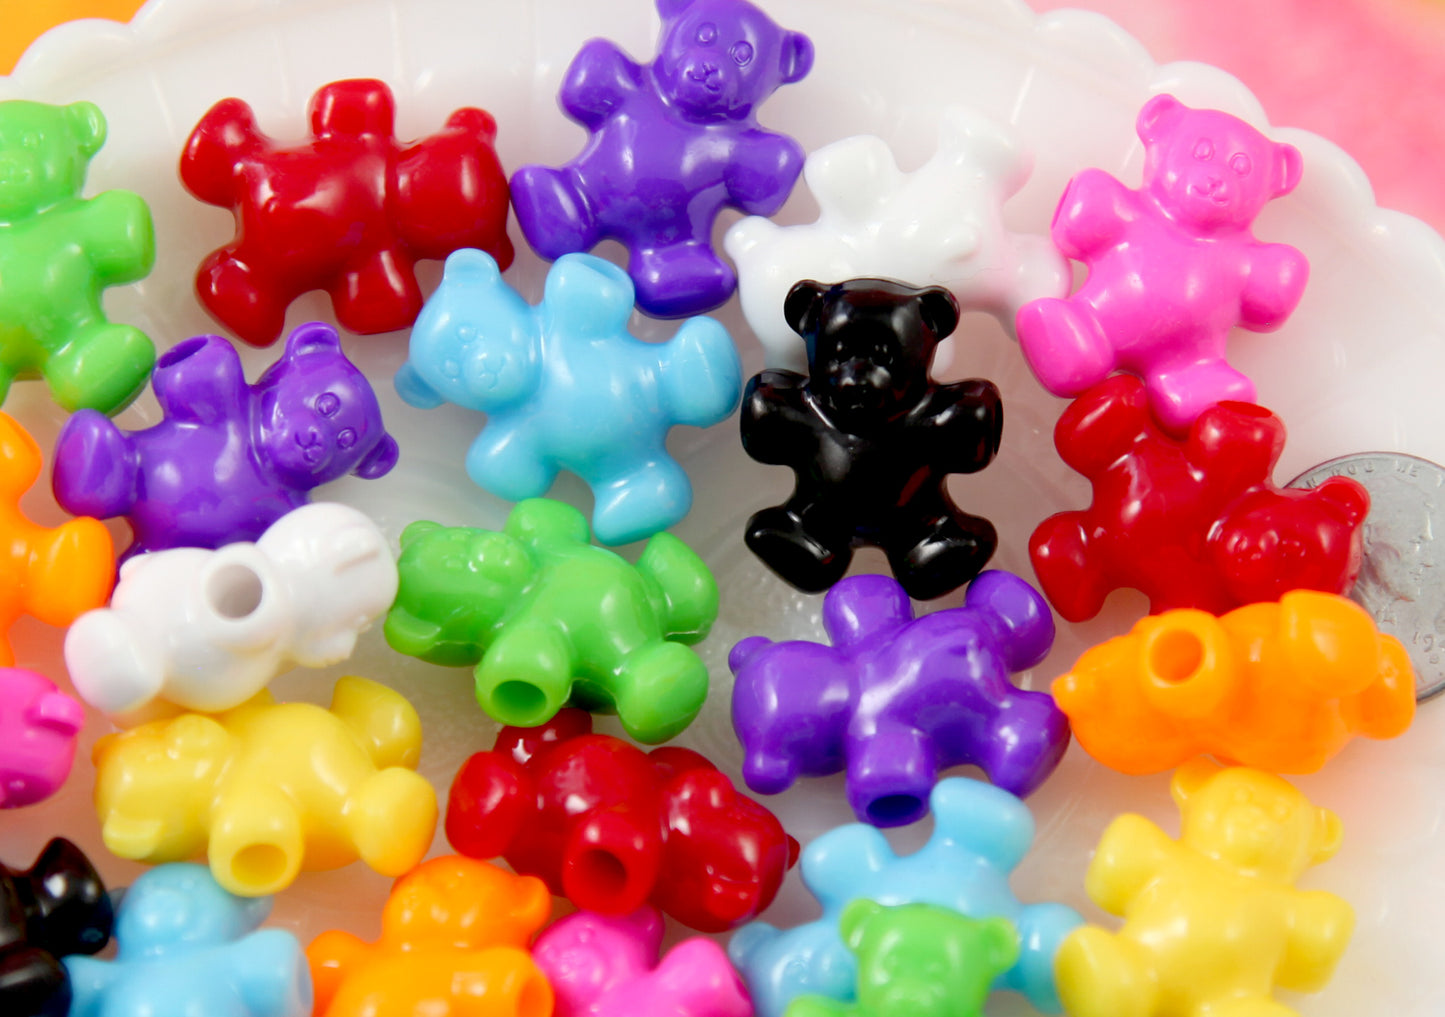 Teddy Bear Beads - 24mm Cute Bear Shape Acrylic or Resin Beads - 24 pc set